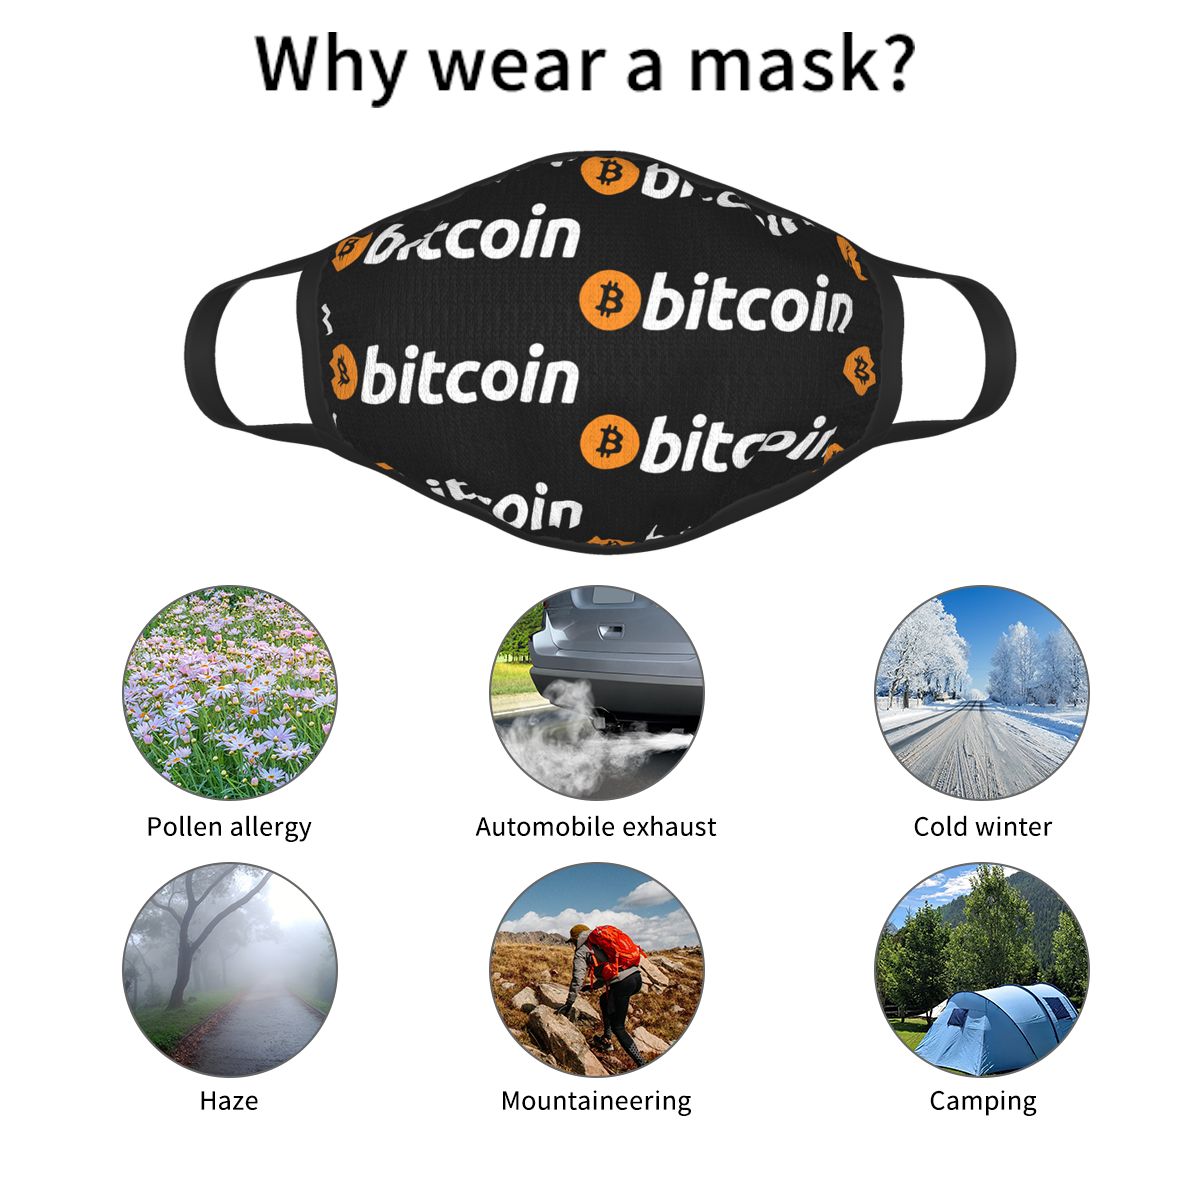 Bitcoin face mask